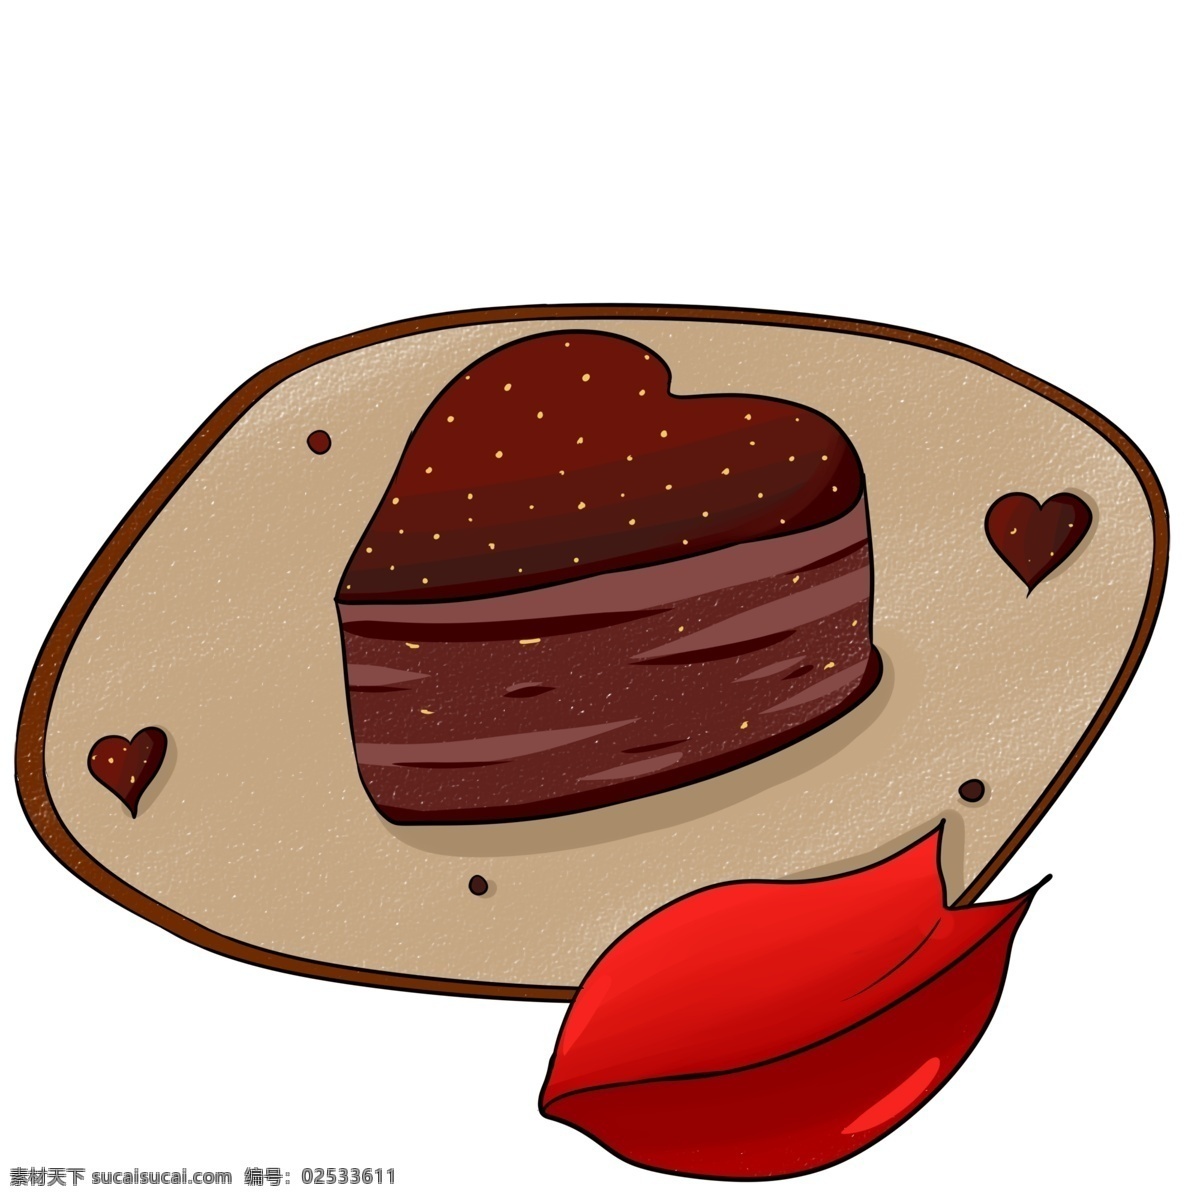 爱心 巧克力 蛋糕 插画 爱心巧克力 巧克力蛋糕 好吃 红色 深棕色爱心 爱心蛋糕插画 美味的蛋糕